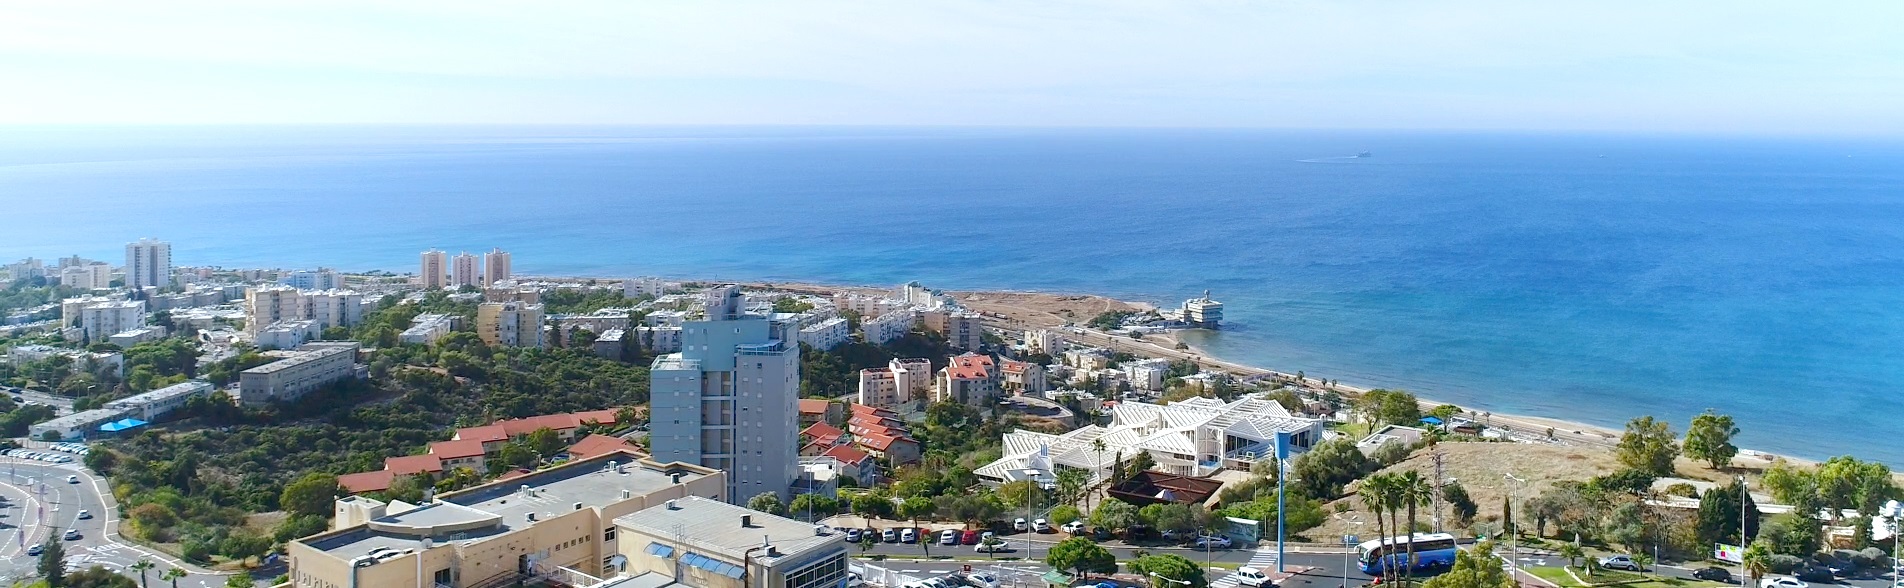 הנוף היפה בישראל מלב חיפה